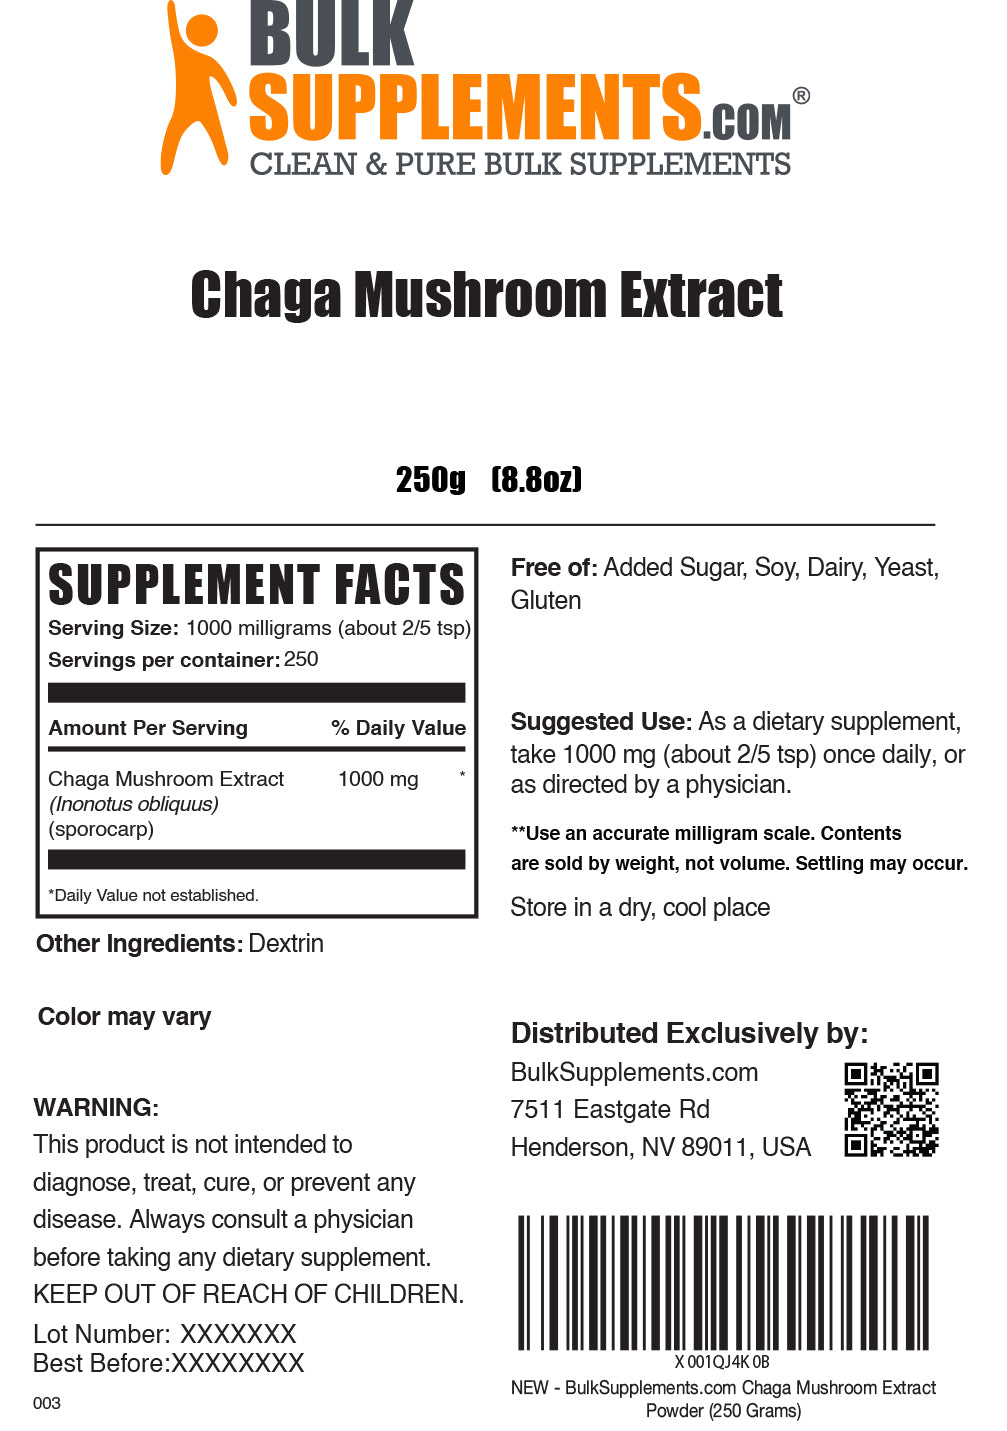 Chaga Mushroom Extract powder label 250g